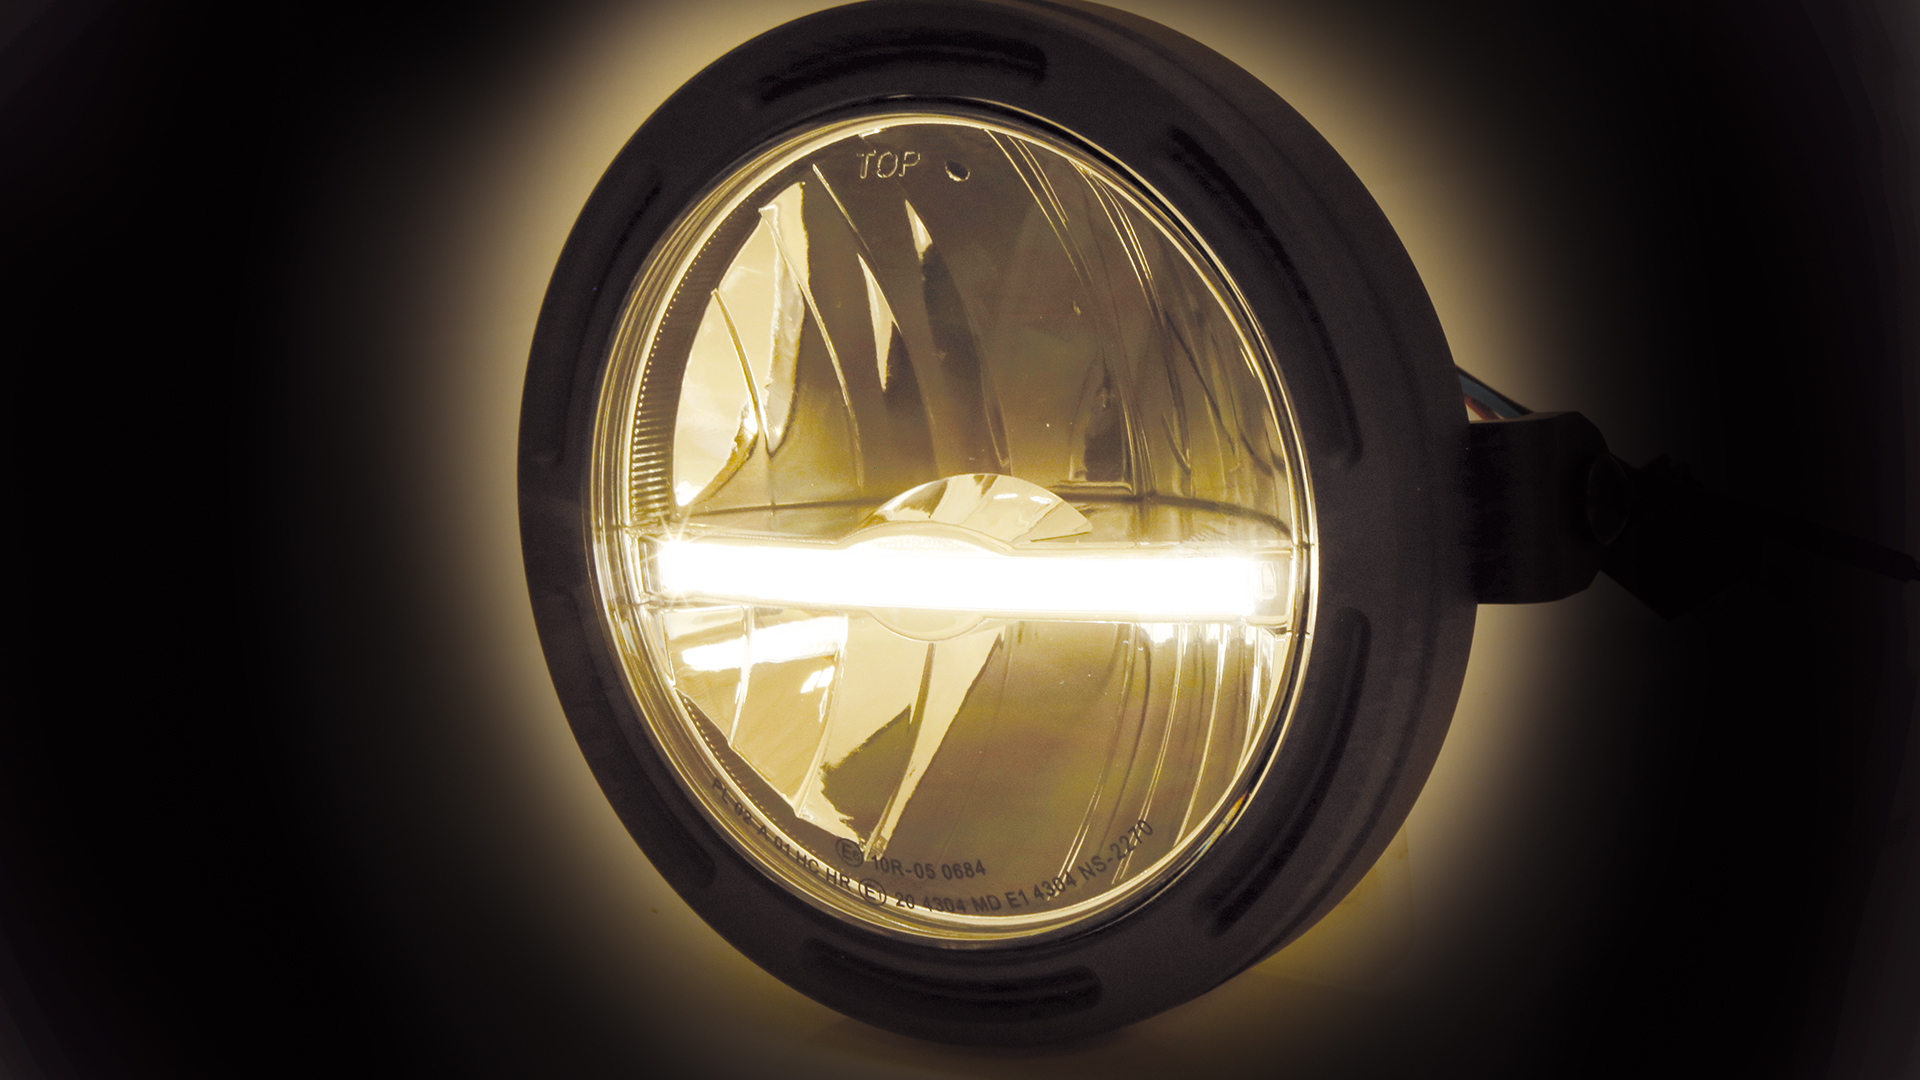 5 3/4 Zoll LED Hauptscheinwerfer FRAME-R2 JACKSON mit Standlichtleiste (Light guide system), rund, schwarz. Erhältlich mit seitlicher oder unterer Befestigung, E-geprüft.